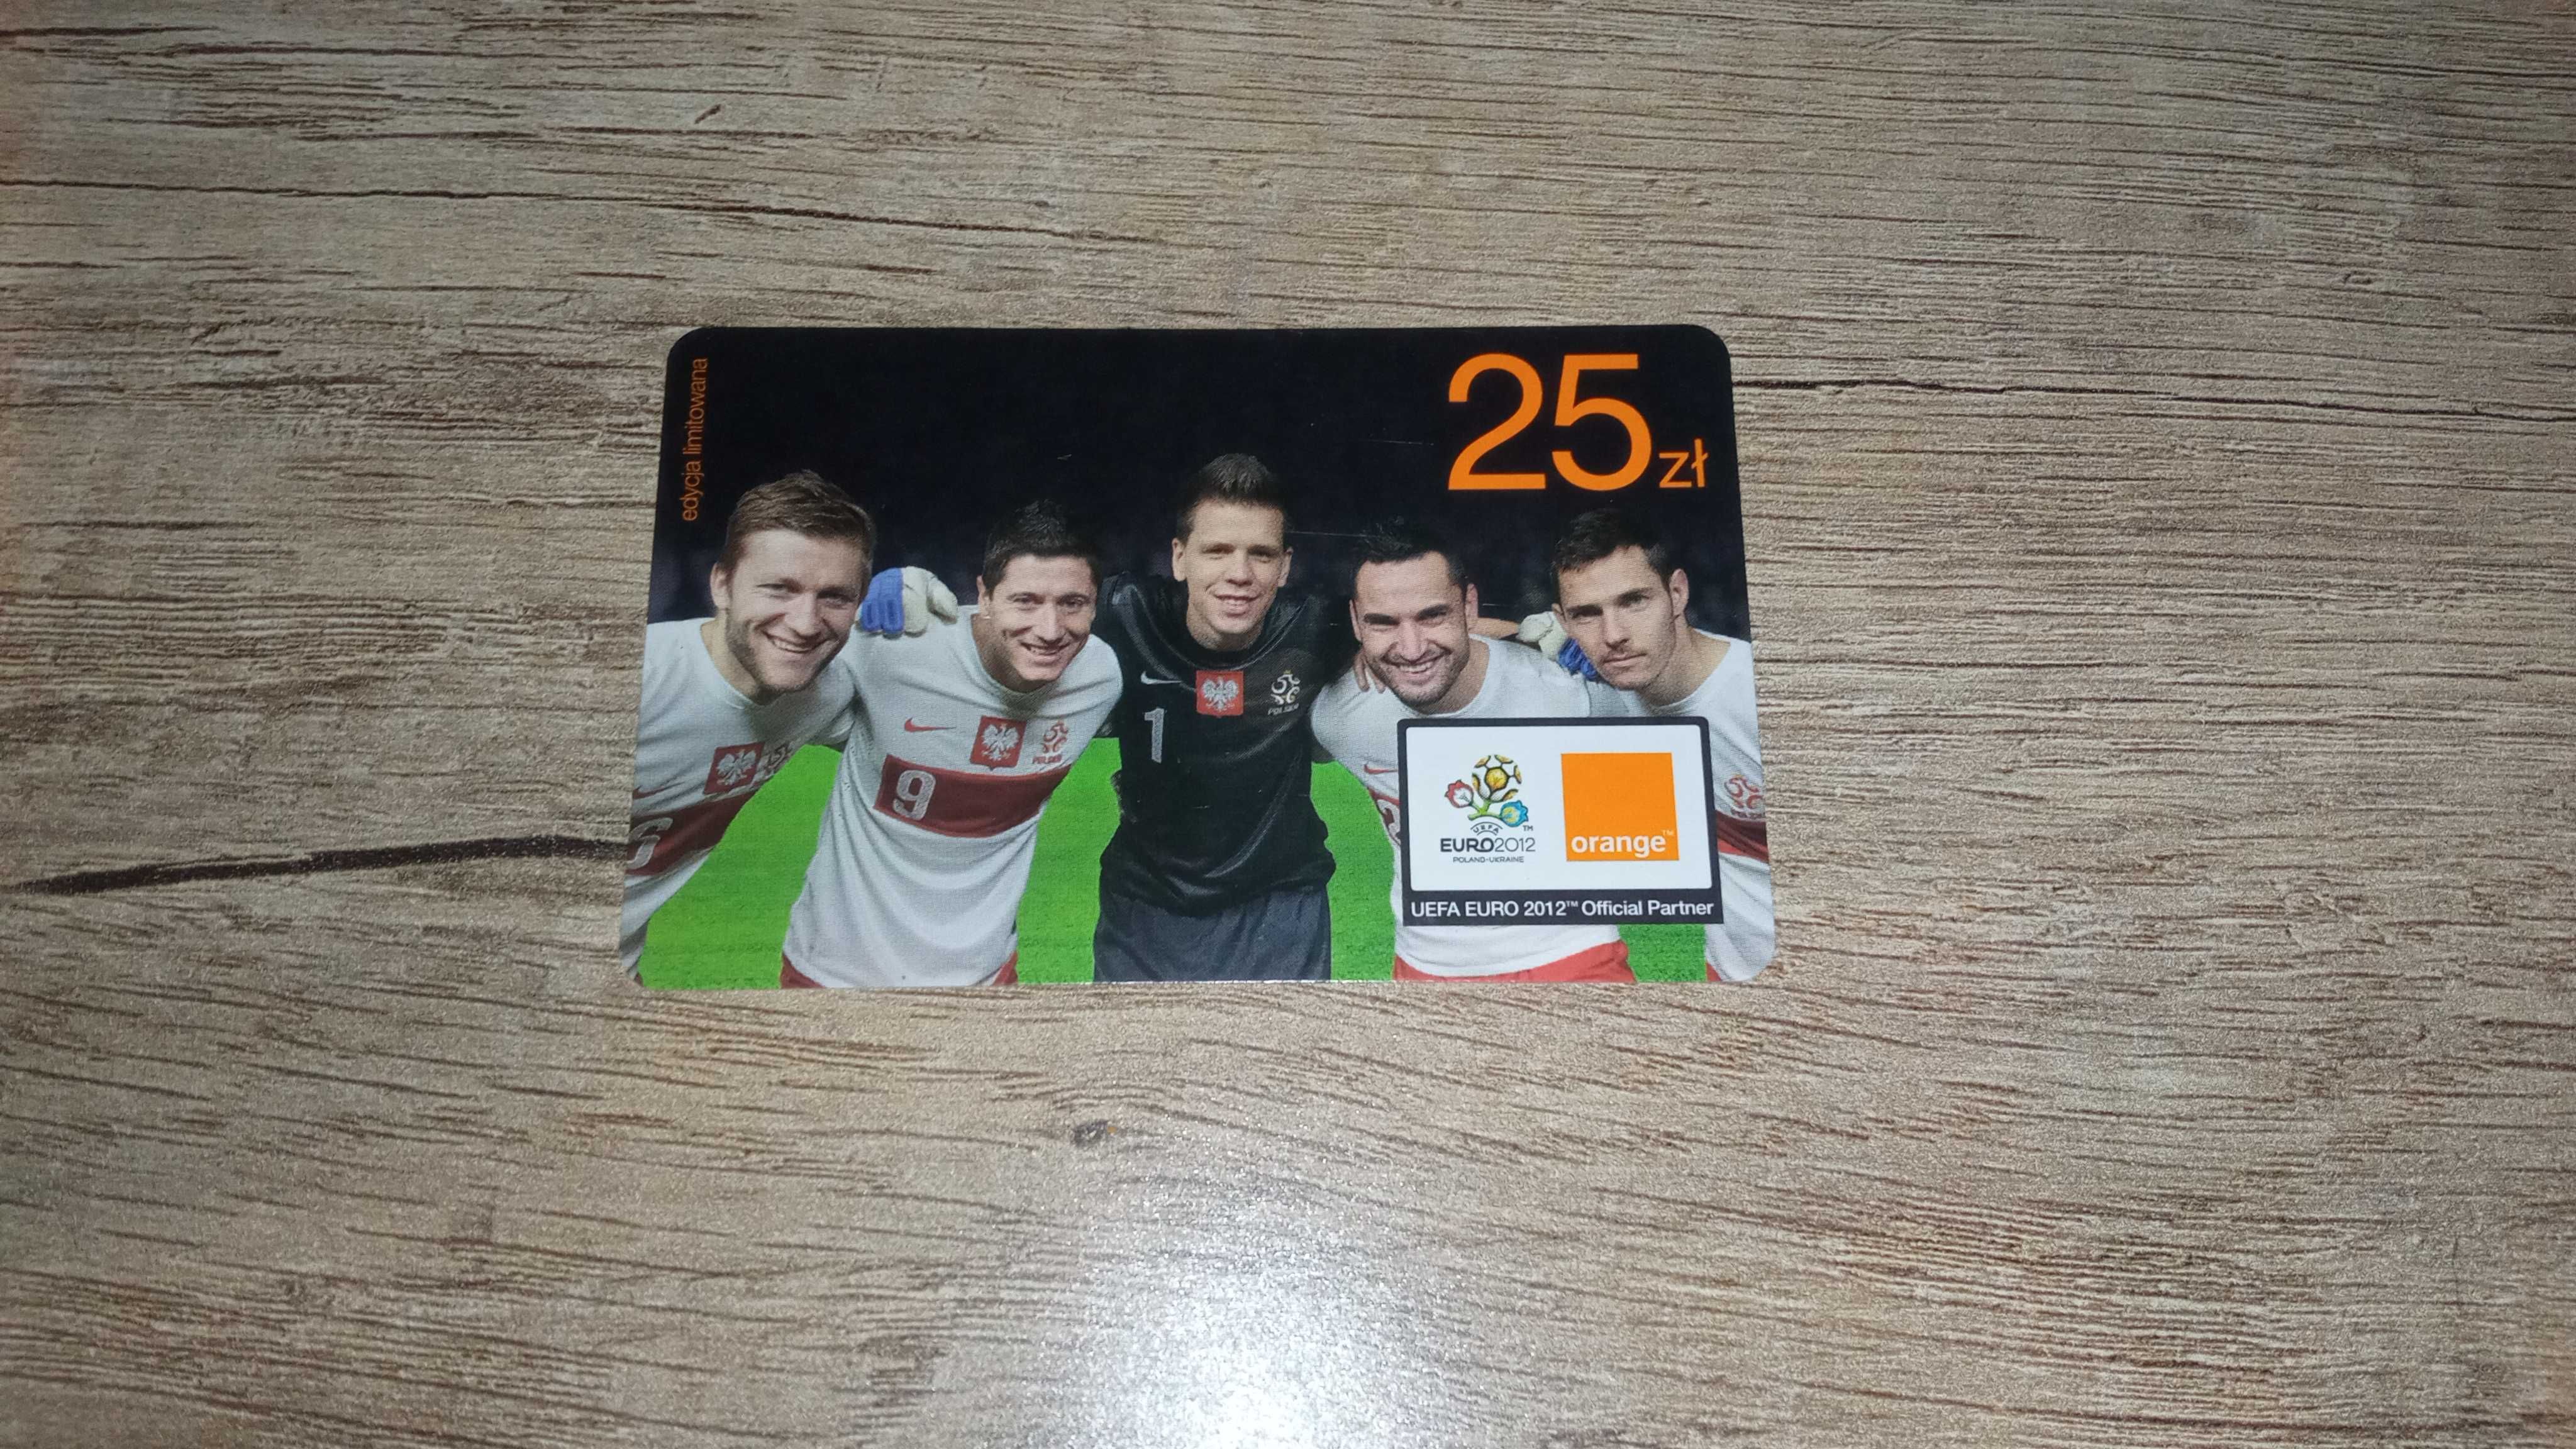 Karta doładowanie Orange kolekcjonerska limitowana EURO 2012